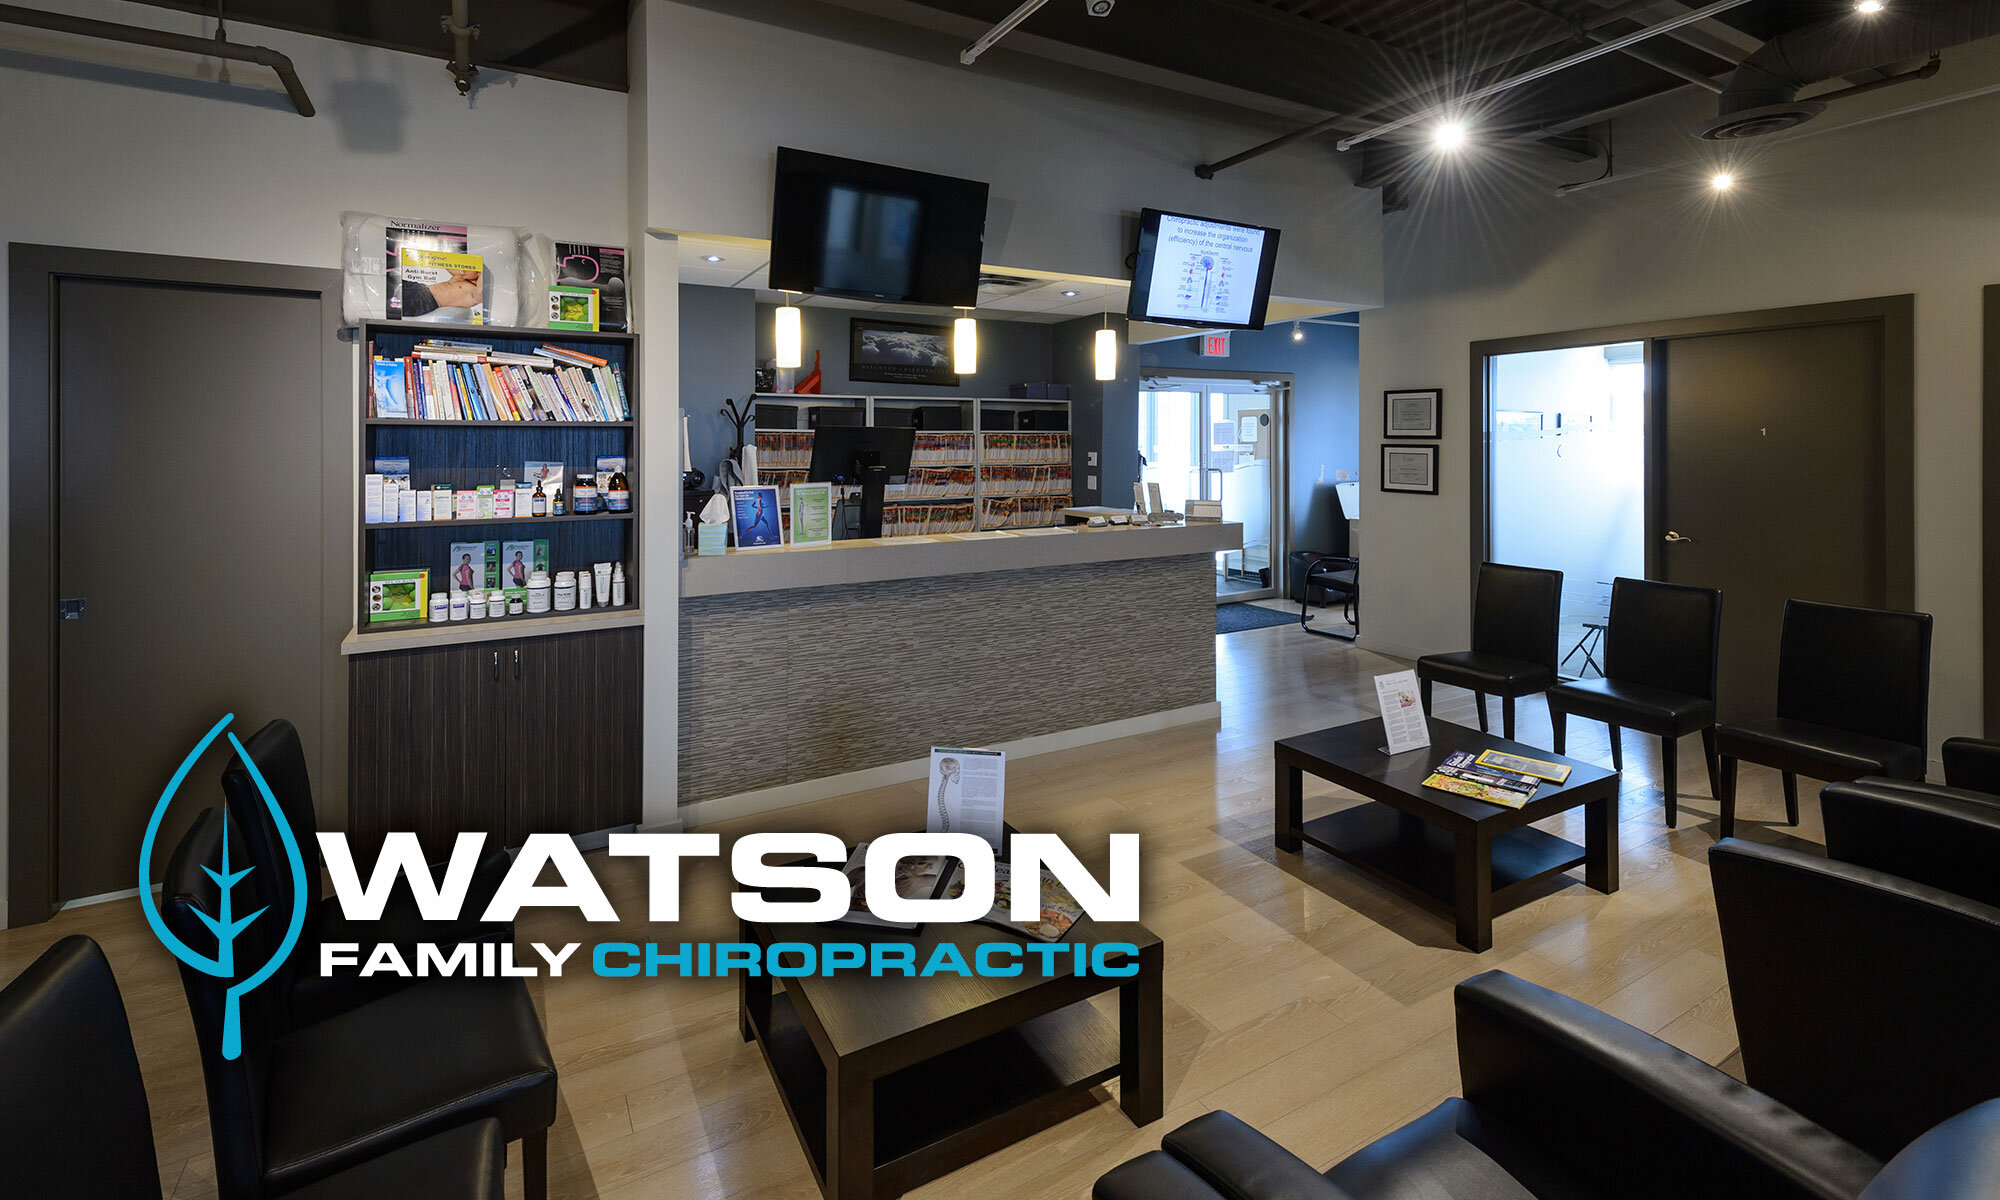  Watson Family Chiropratic waiting room 